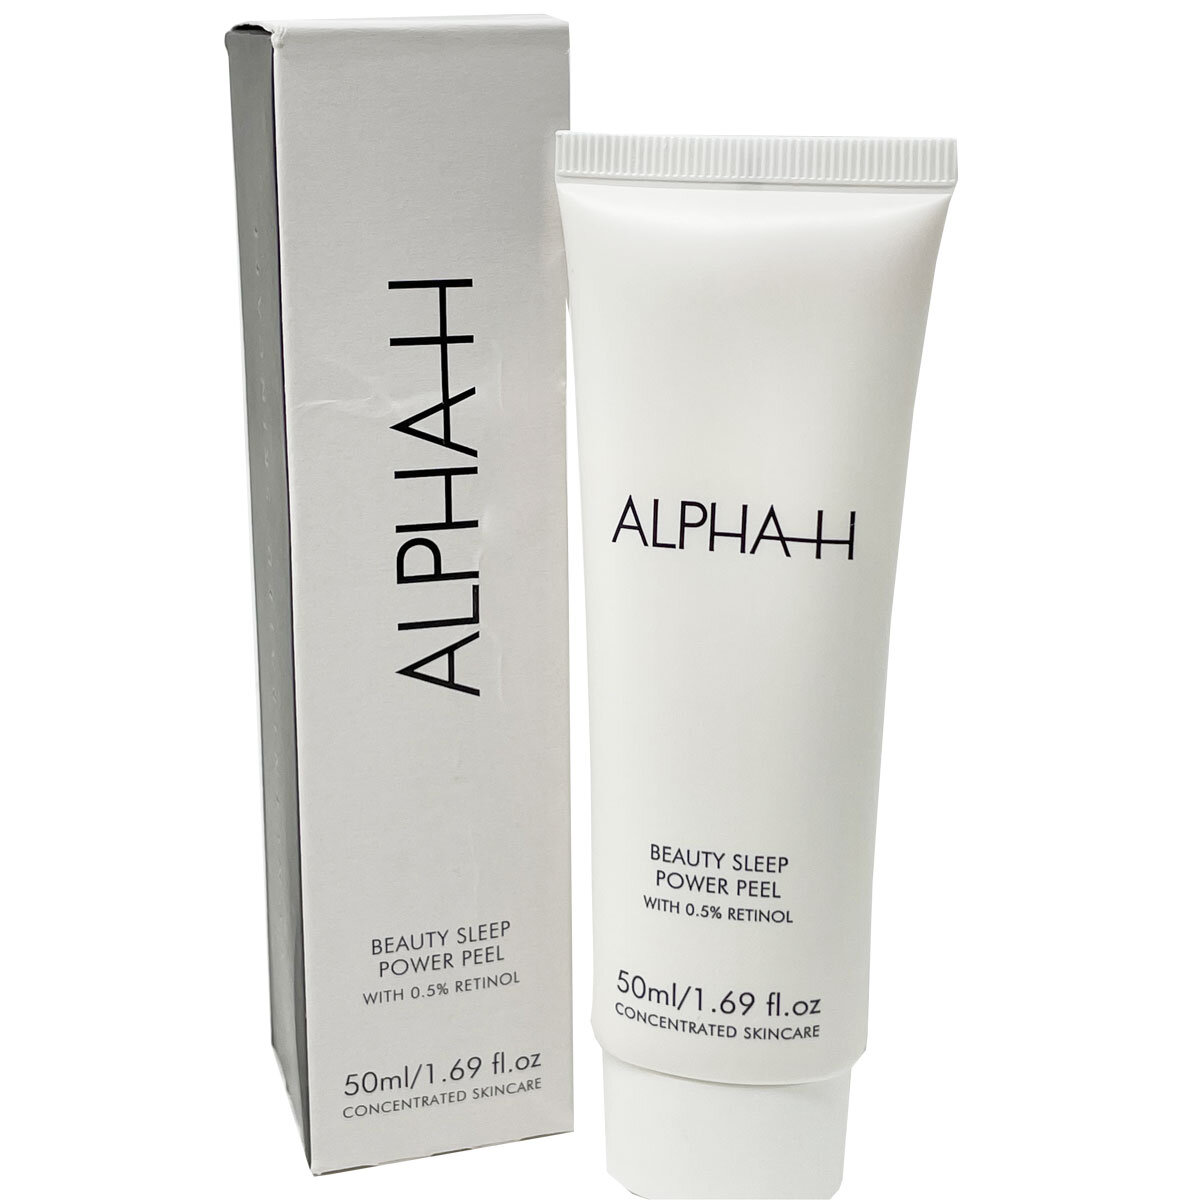 Alpha-H Beauty Sleep Power Peel, 50ml